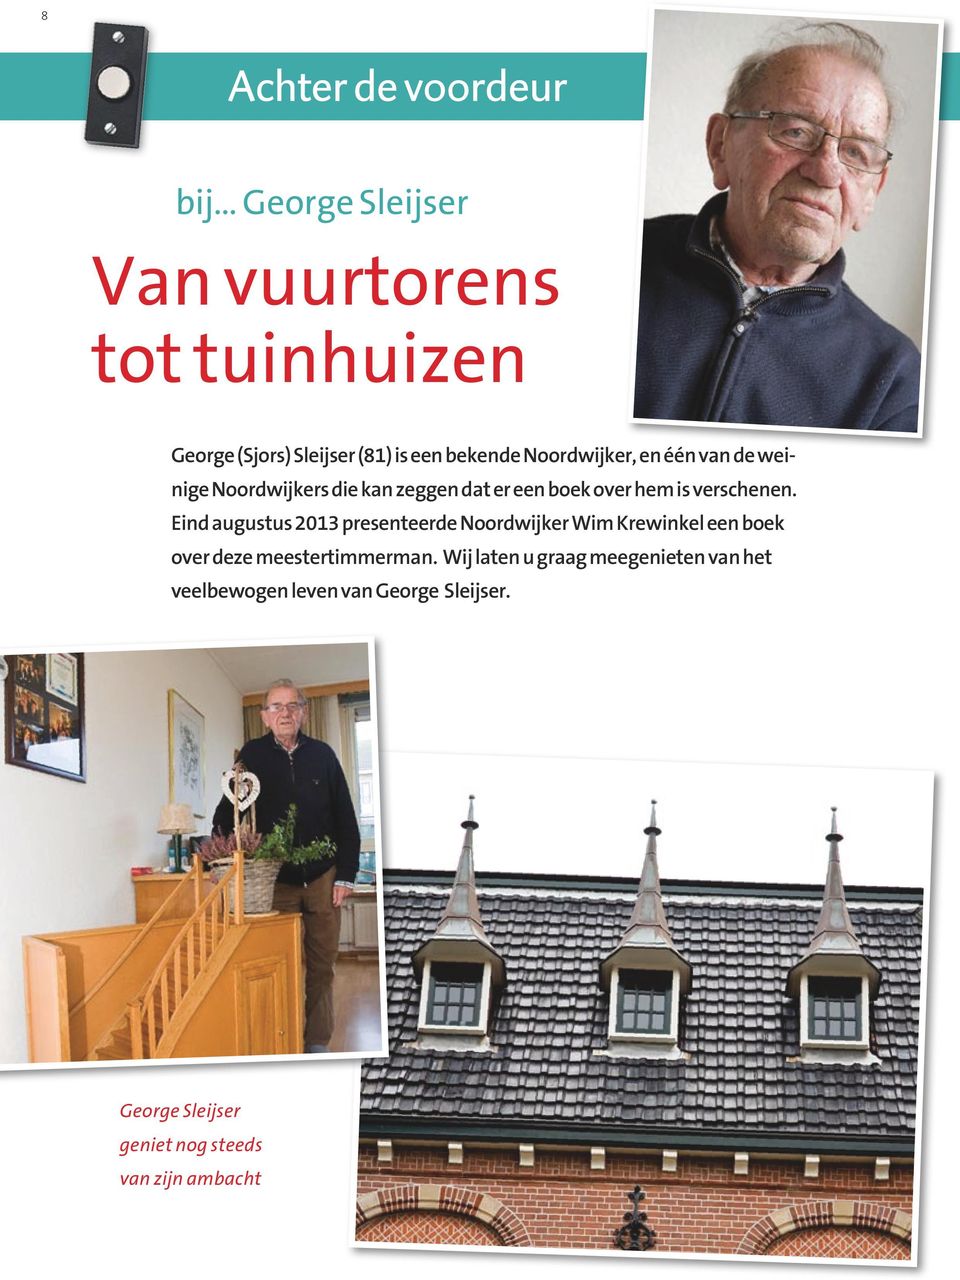 Eind augustus 2013 presenteerde Noordwijker Wim Krewinkel een boek over deze meestertimmerman.